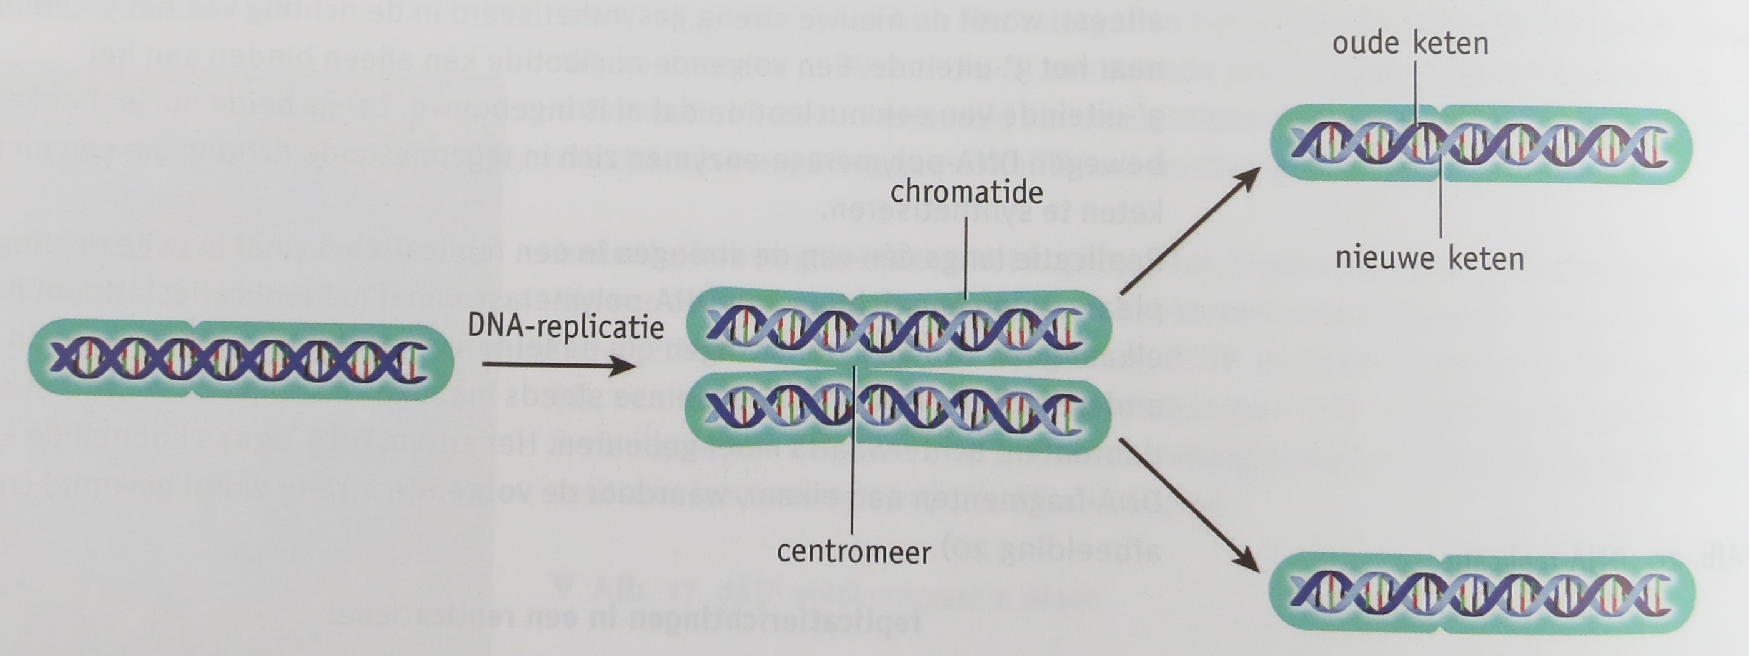 helicase = een enzym dat er voor zorgt dat het dubbelstrengs-dna uit elkaar 'ritst'.